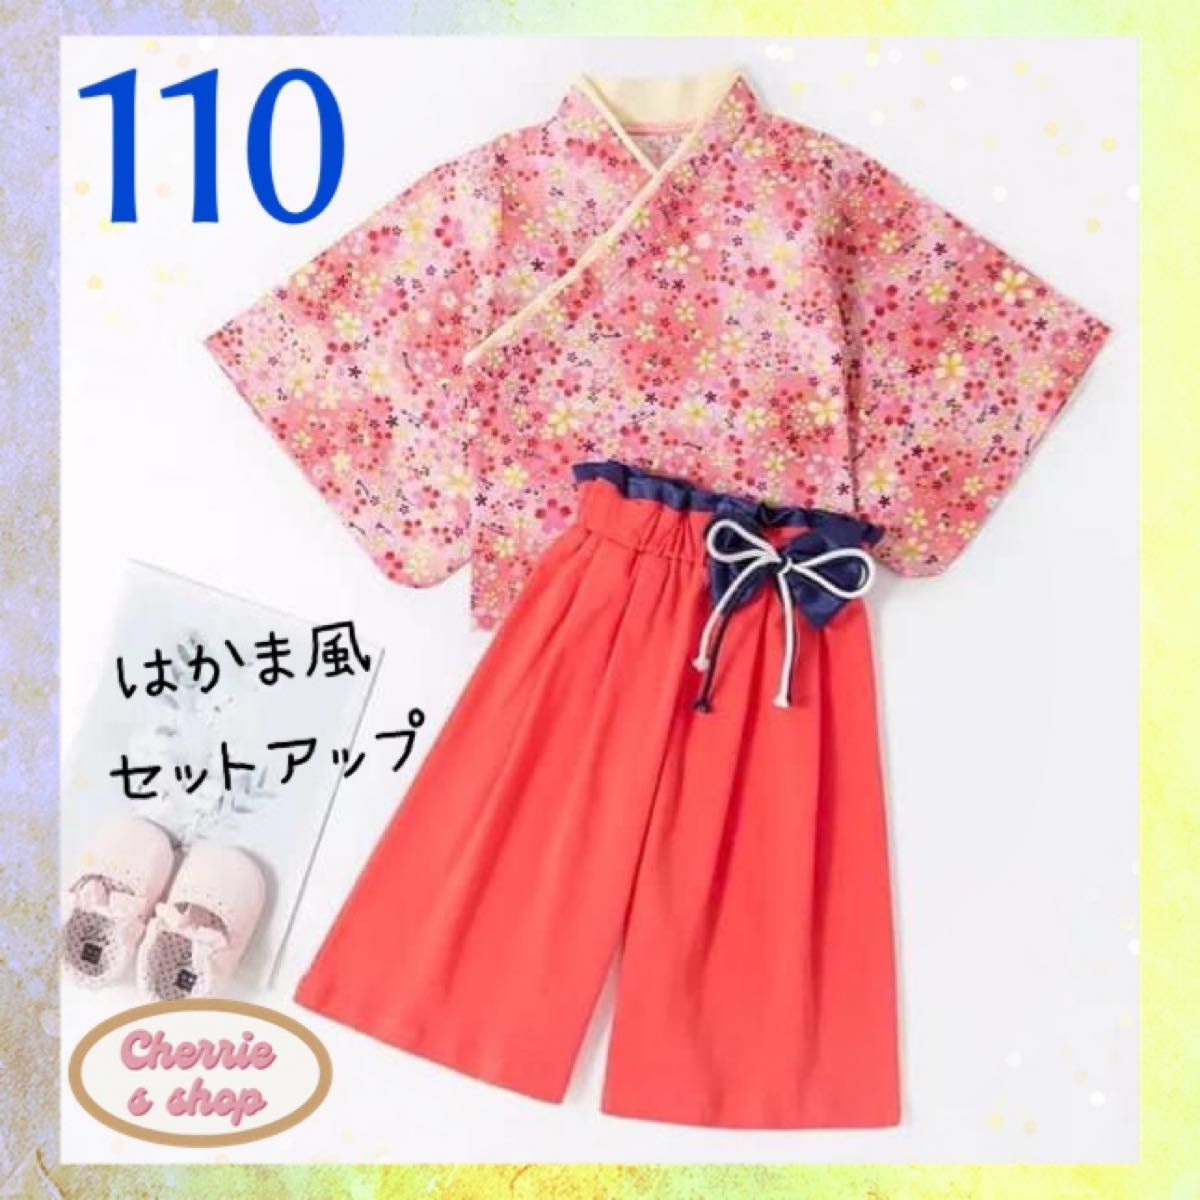 110 女の子 袴 セットアップ ピンク 花柄 七五三 キッズ 記念日 着物